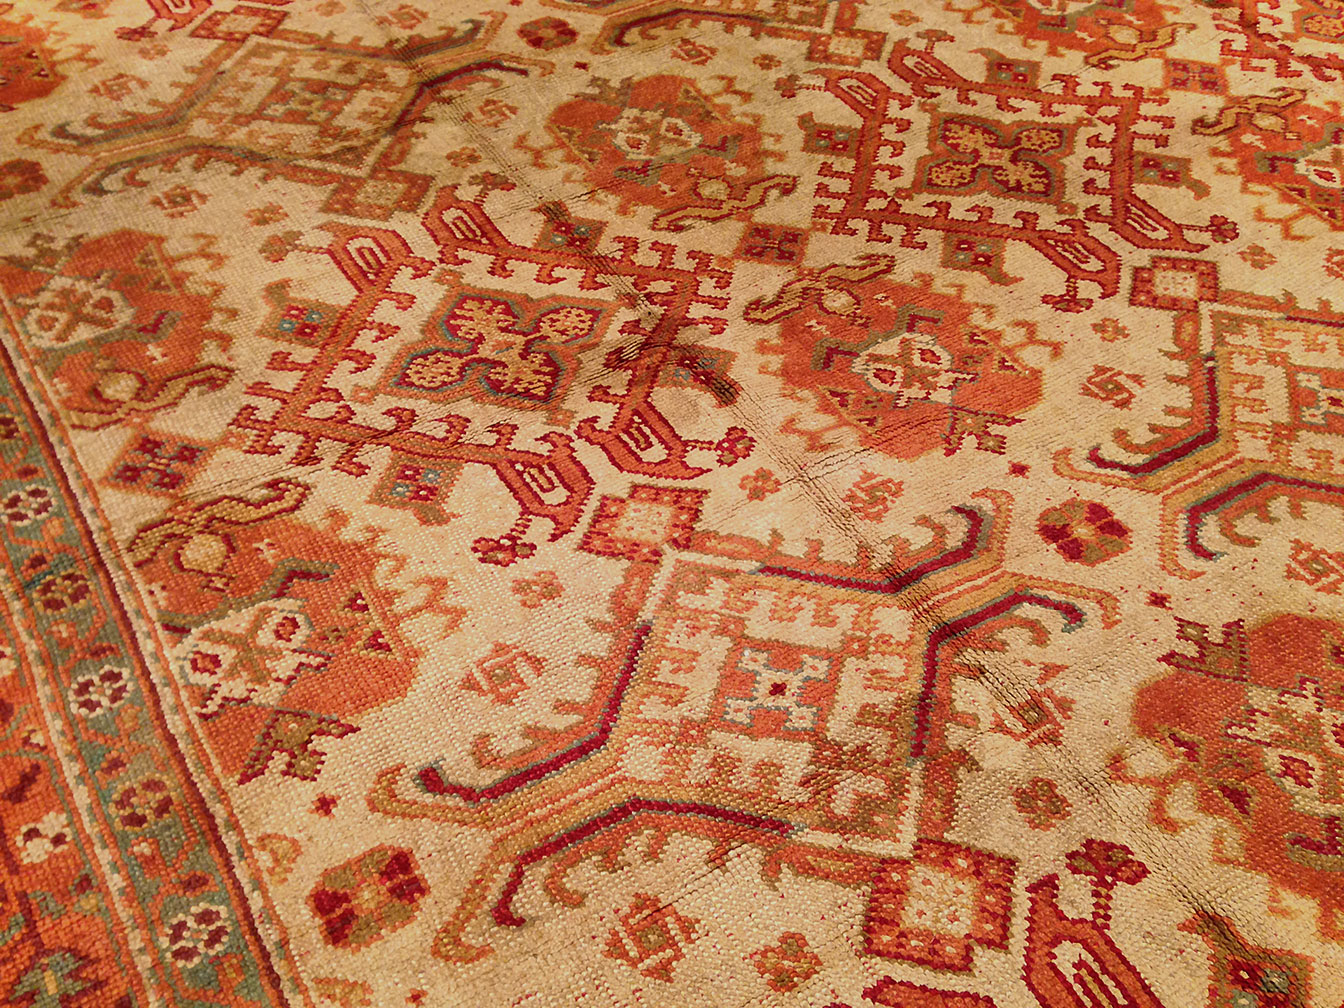 Antique donegal Carpet - # 9147